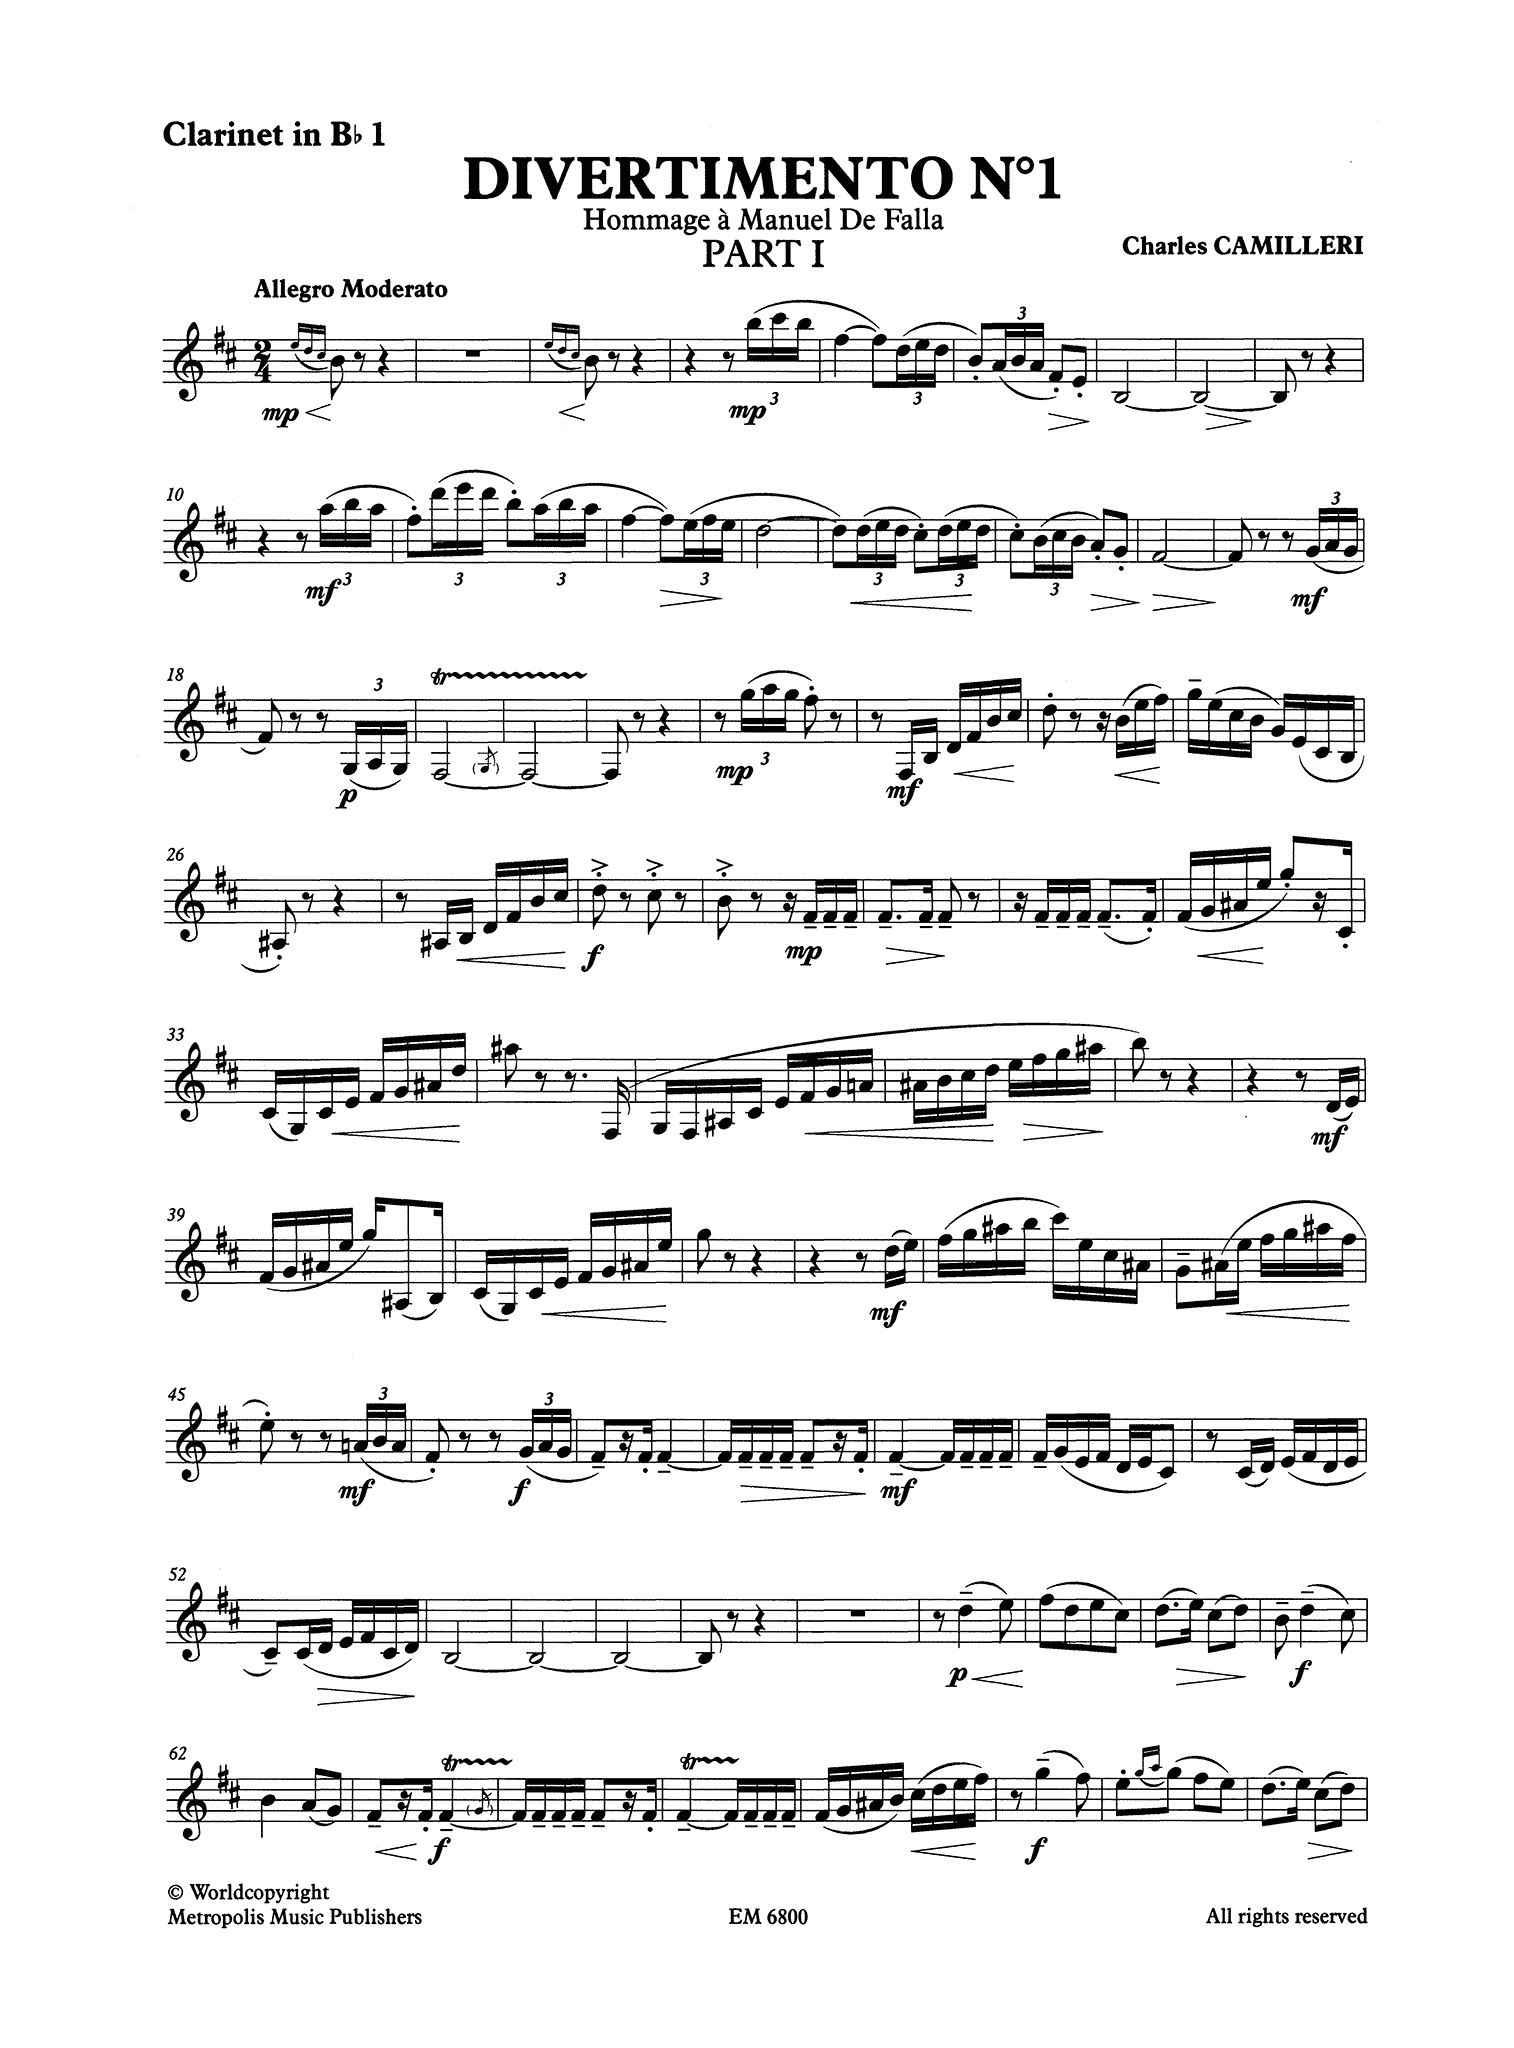 Camilleri Divertimento No. 1 first clarinet part